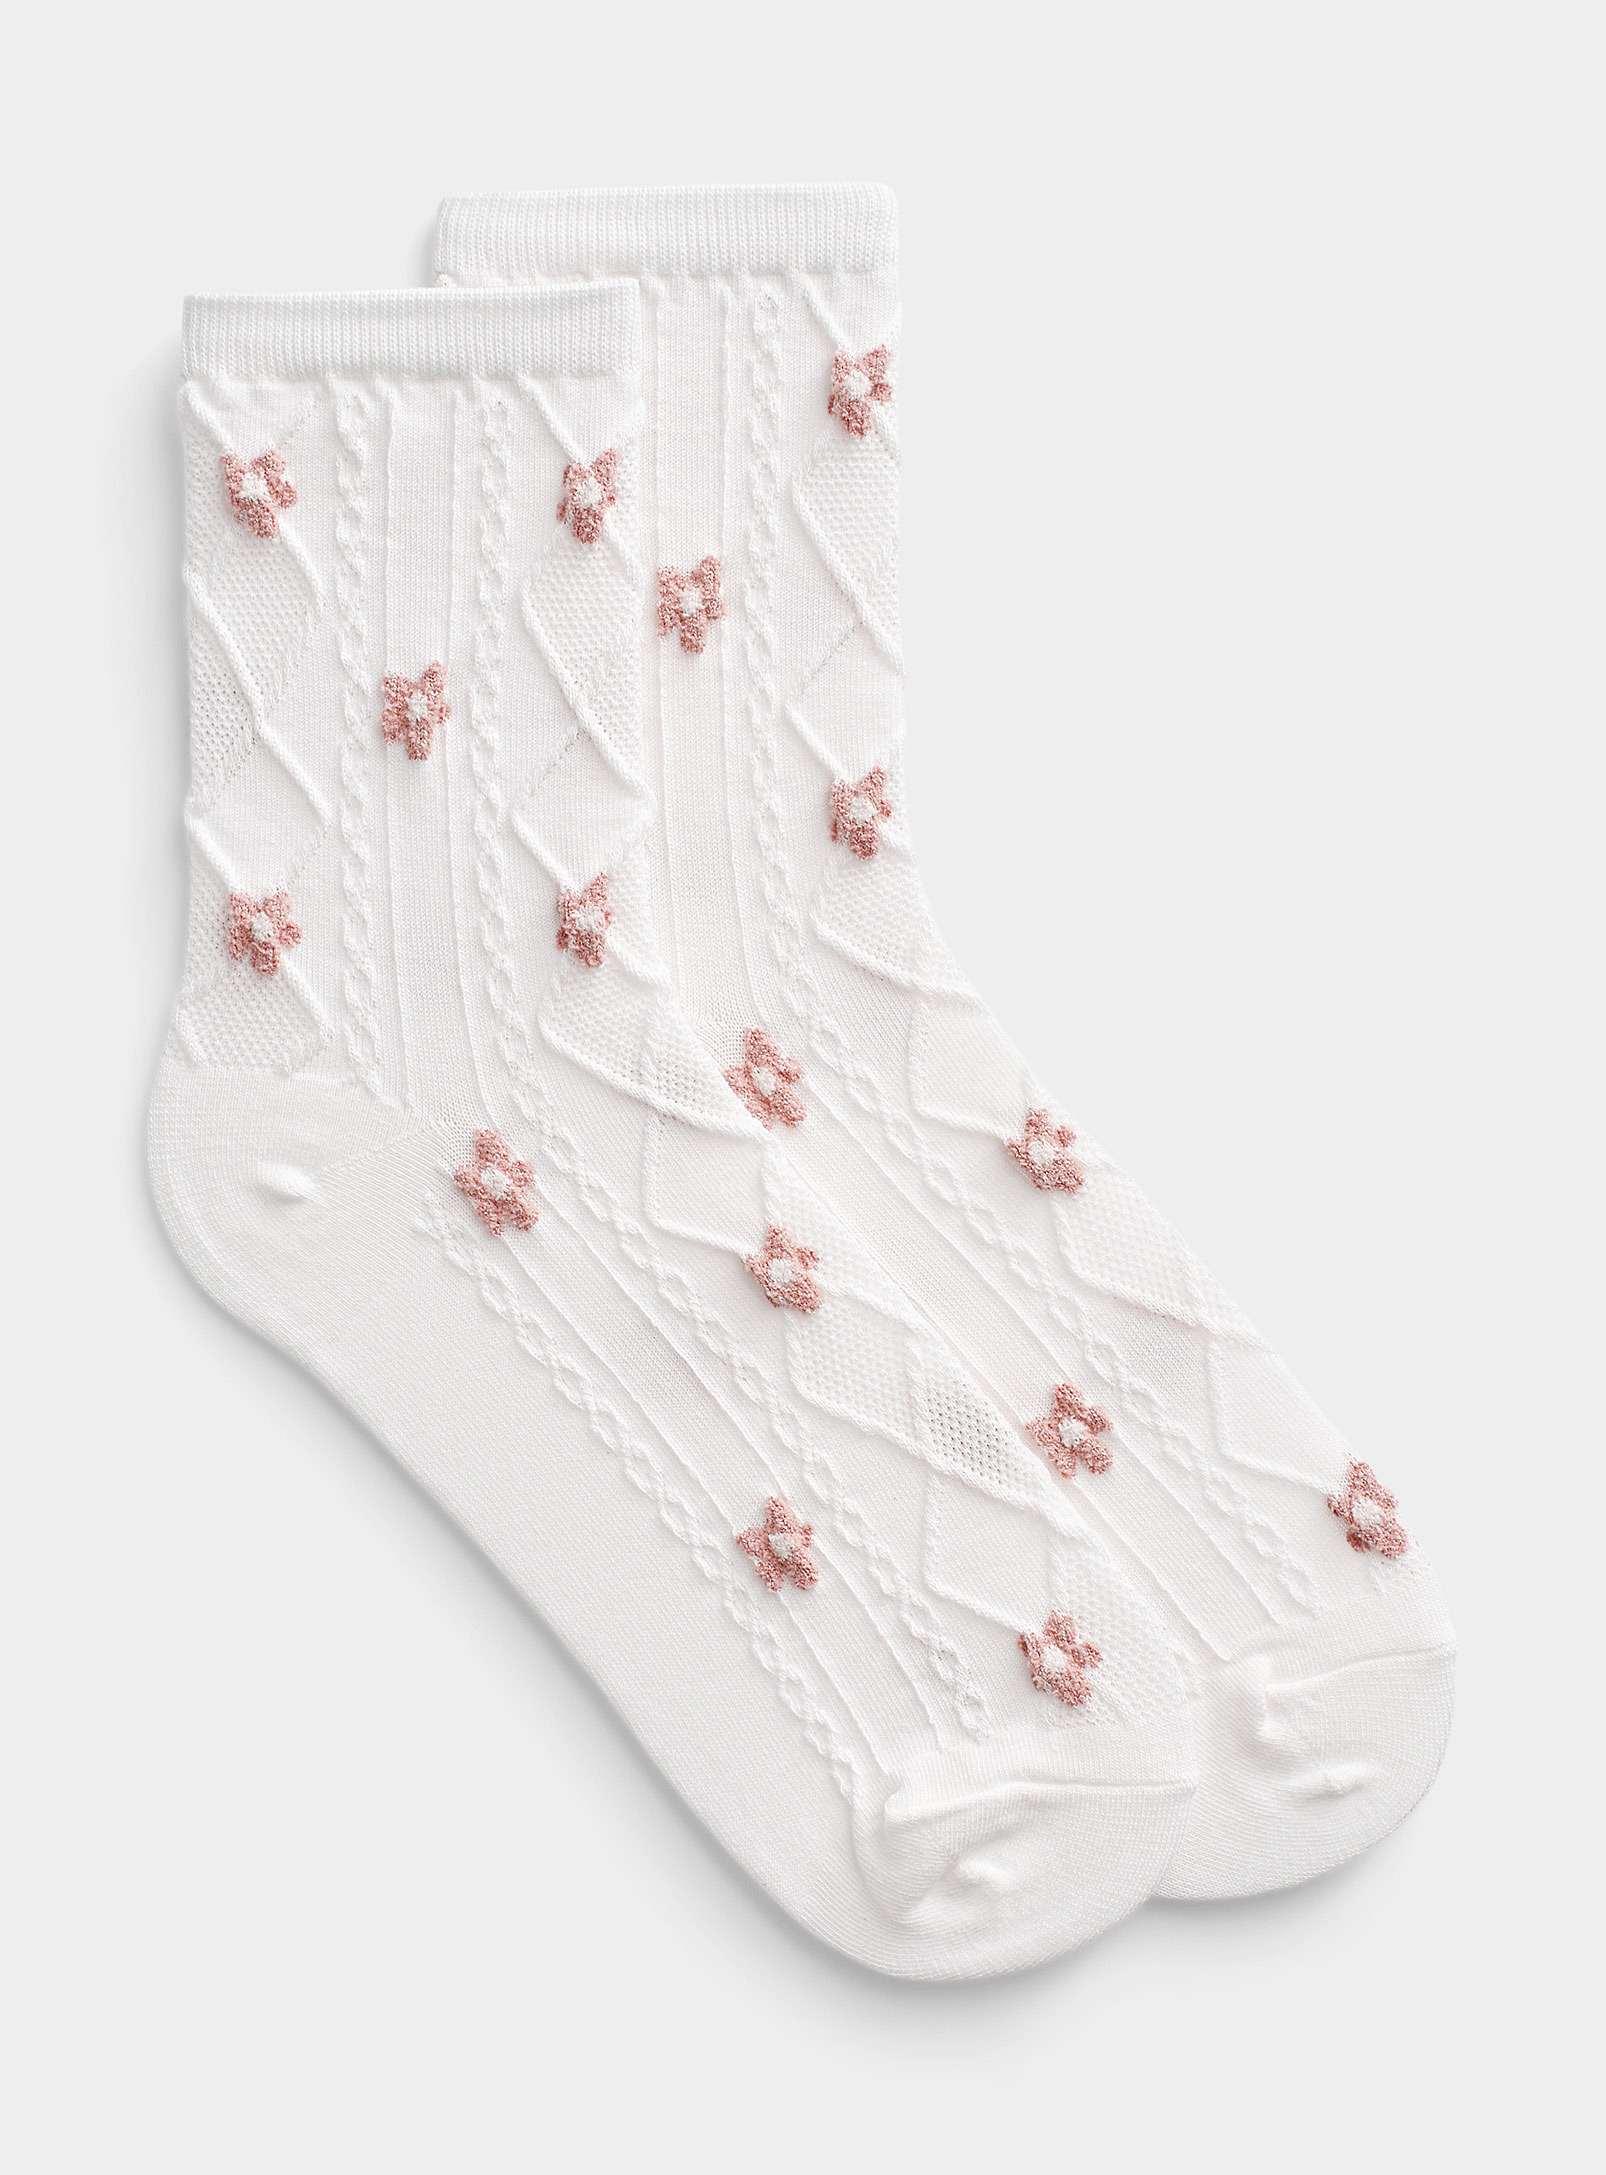 Simons - Women's Daisy and diamond ankle sock